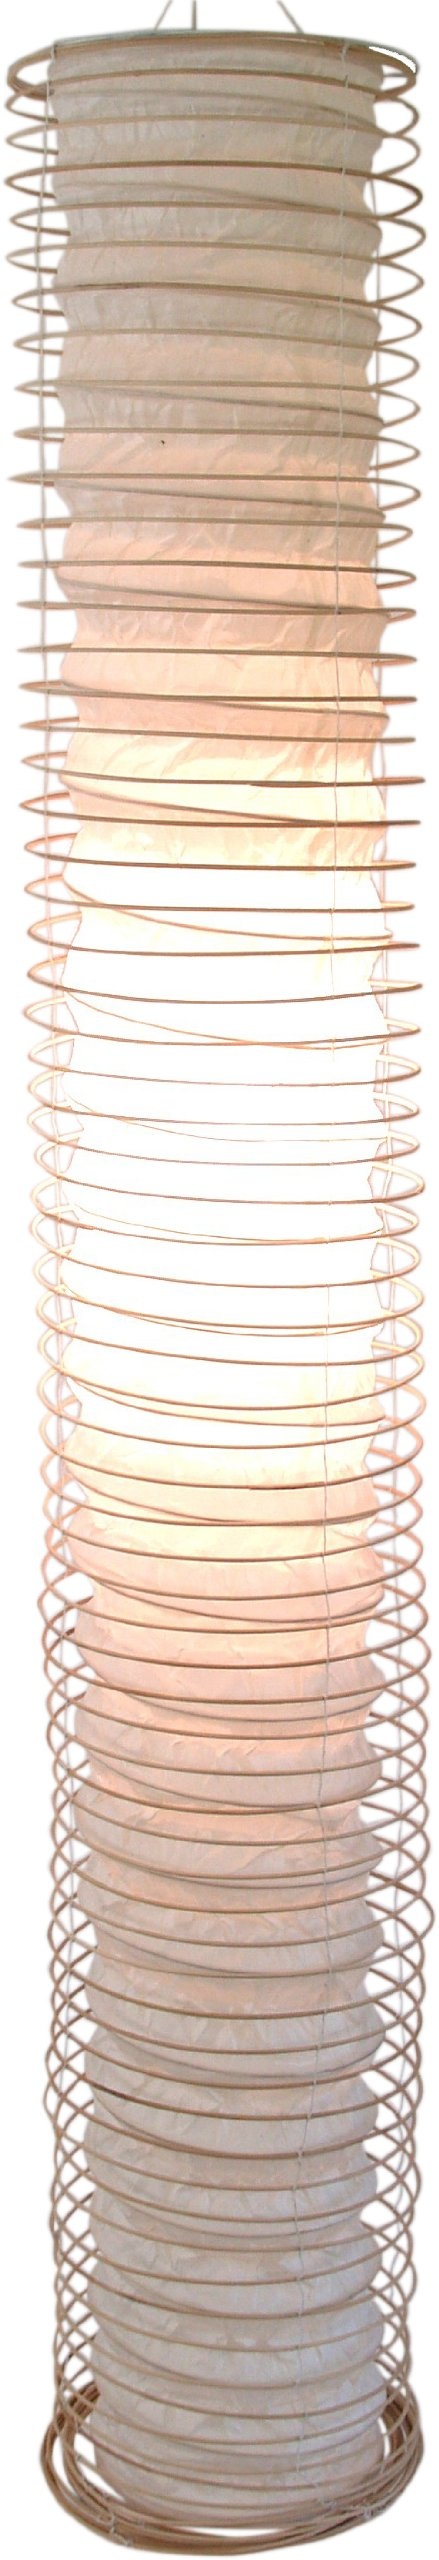 GURU SHOP Faltbarer Deckenlampe/Deckenleuchte Malai 180, Handgemacht in Bali, Baumwolle, Weiß, Papier, 180x25x25 cm, Hängeleuchten aus Natürlichen Materialien